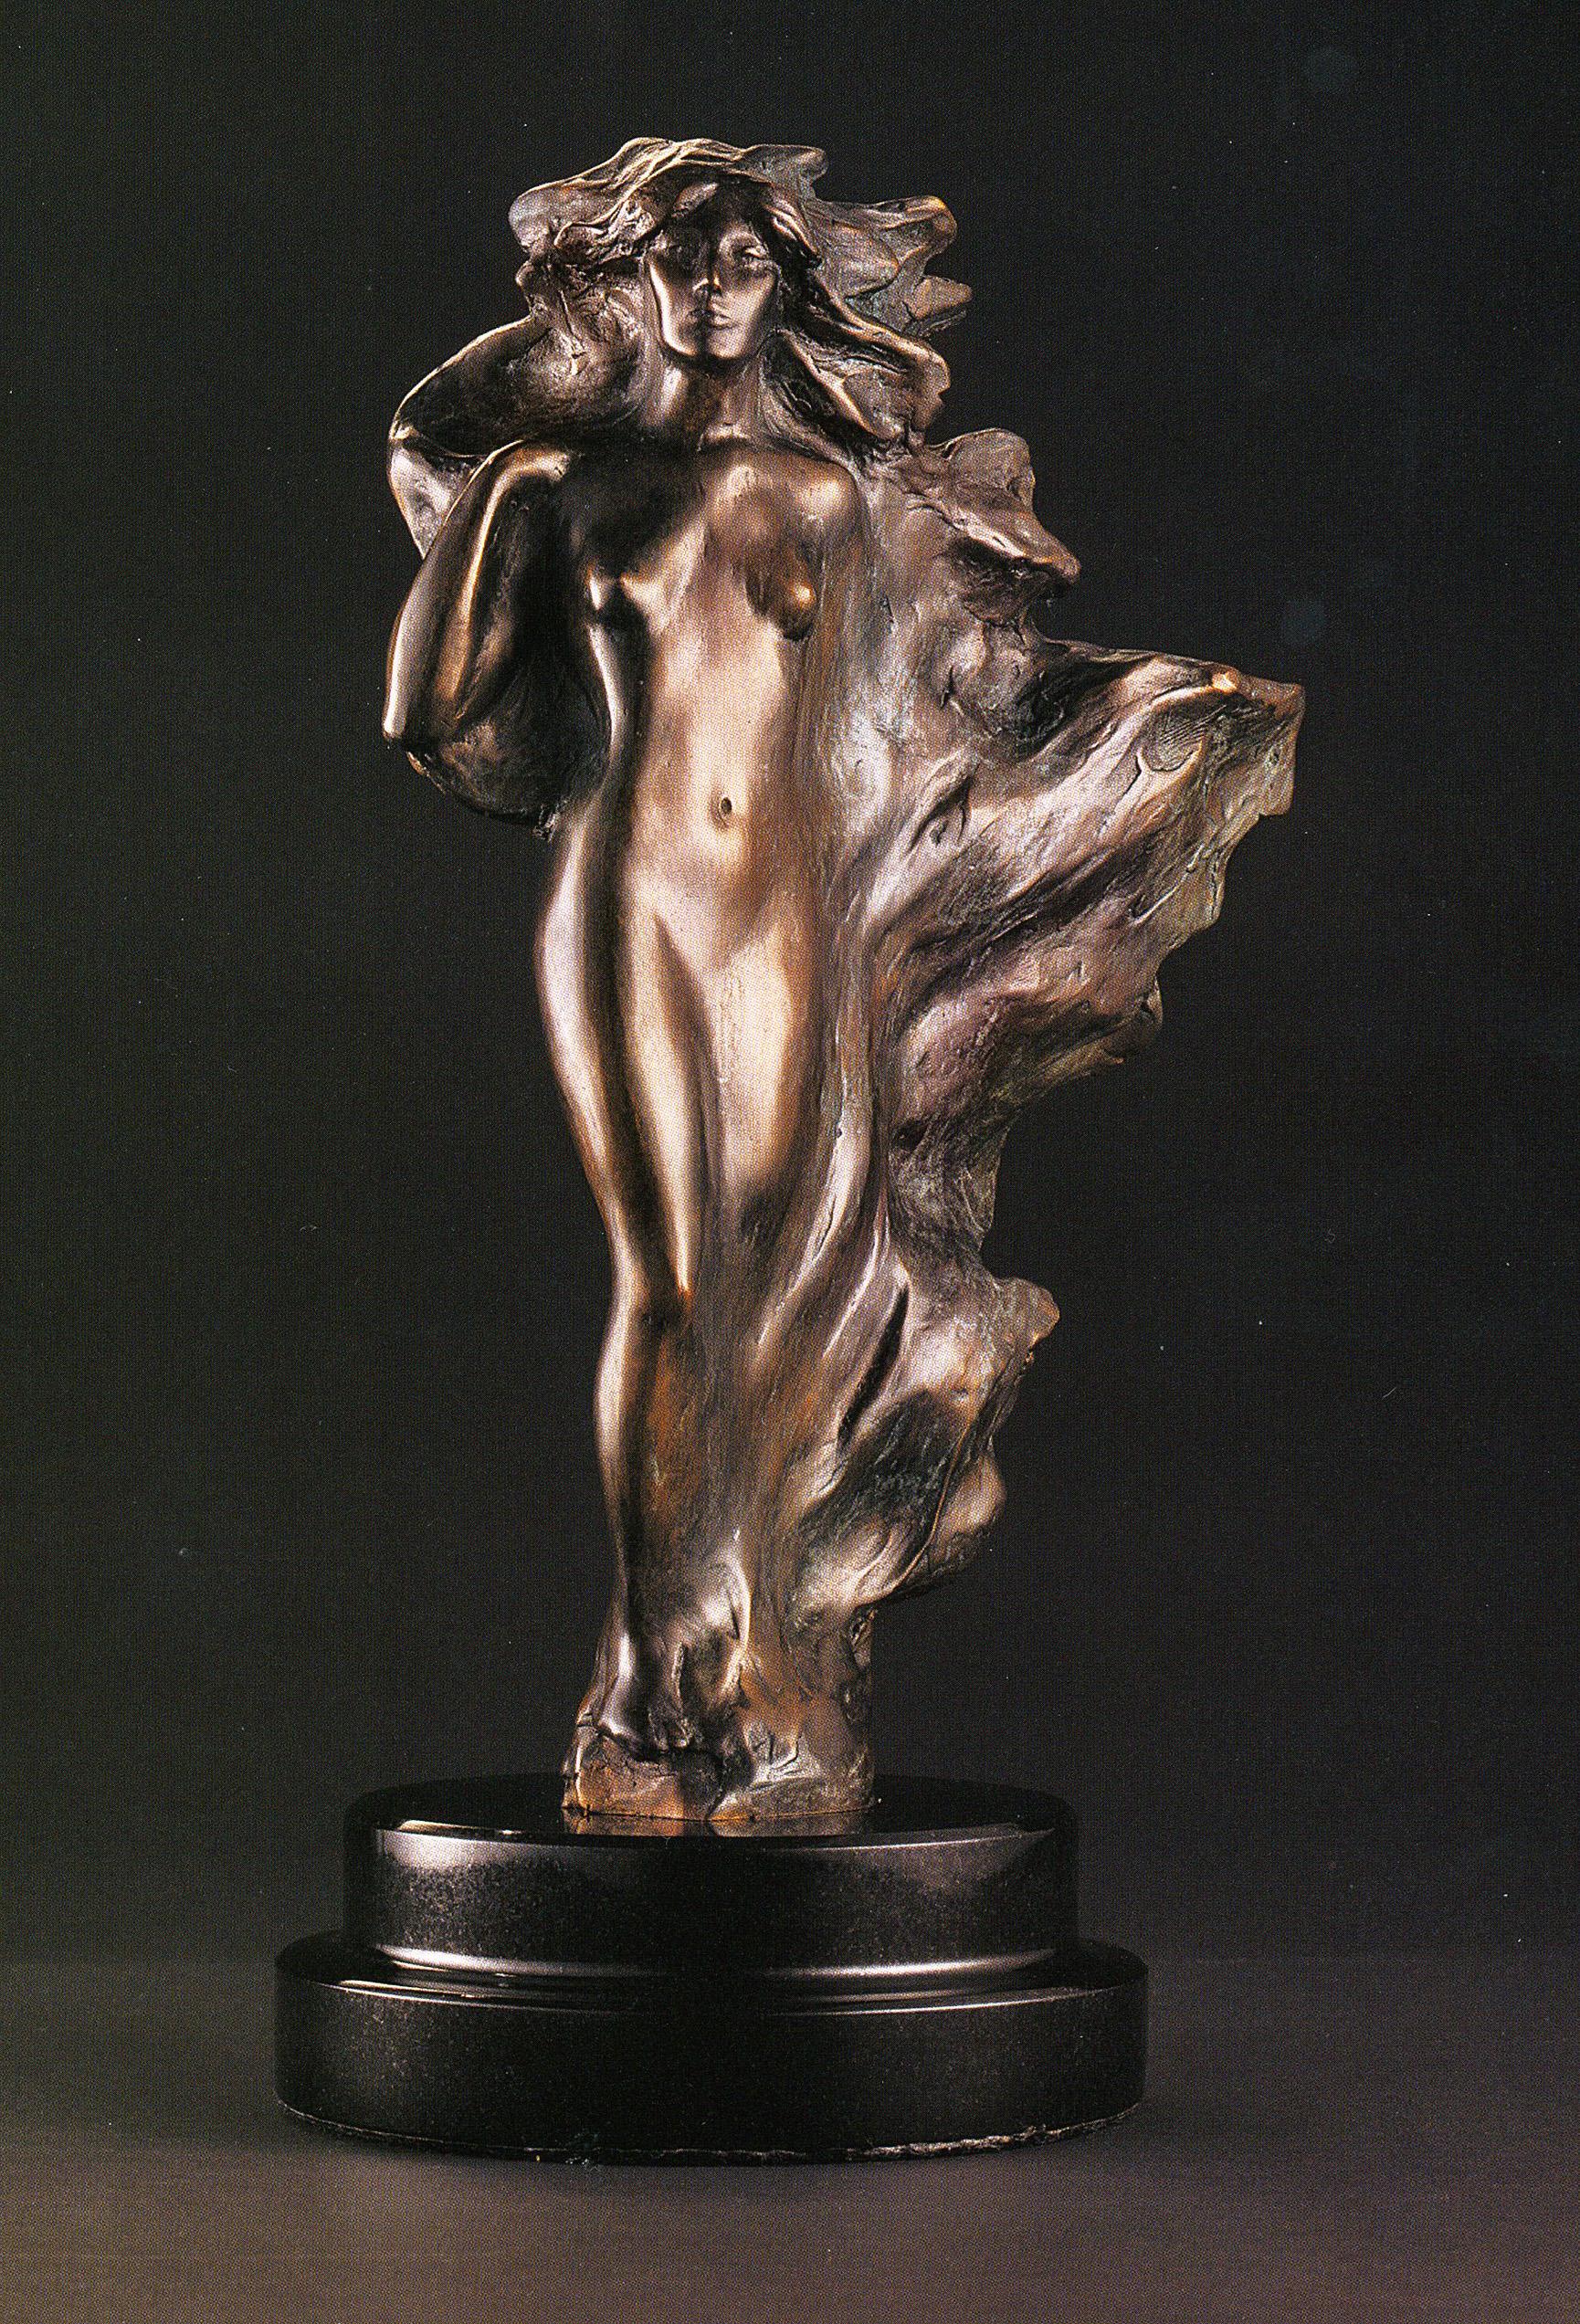 Frederick Hart est le plus grand sculpteur figuratif d'Amérique. Non seulement il a créé des œuvres d'une grande beauté et d'une grande gravité, mais il a été singulièrement responsable de la restitution aux monuments publics américains et aux